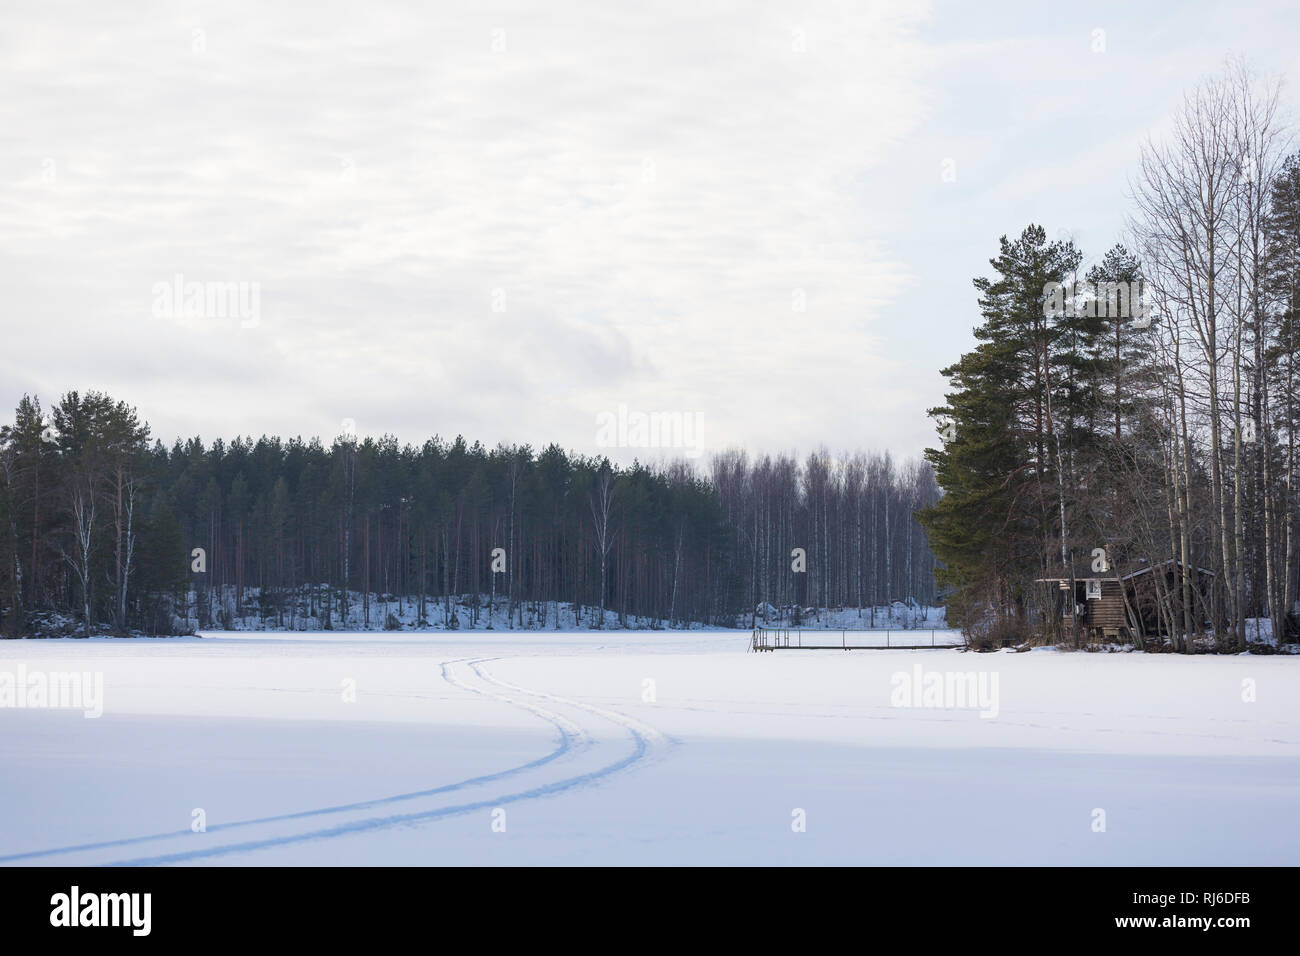 Finnland, Landschaft mit Schnee, Spur und Bäumen auf See Stock Photo